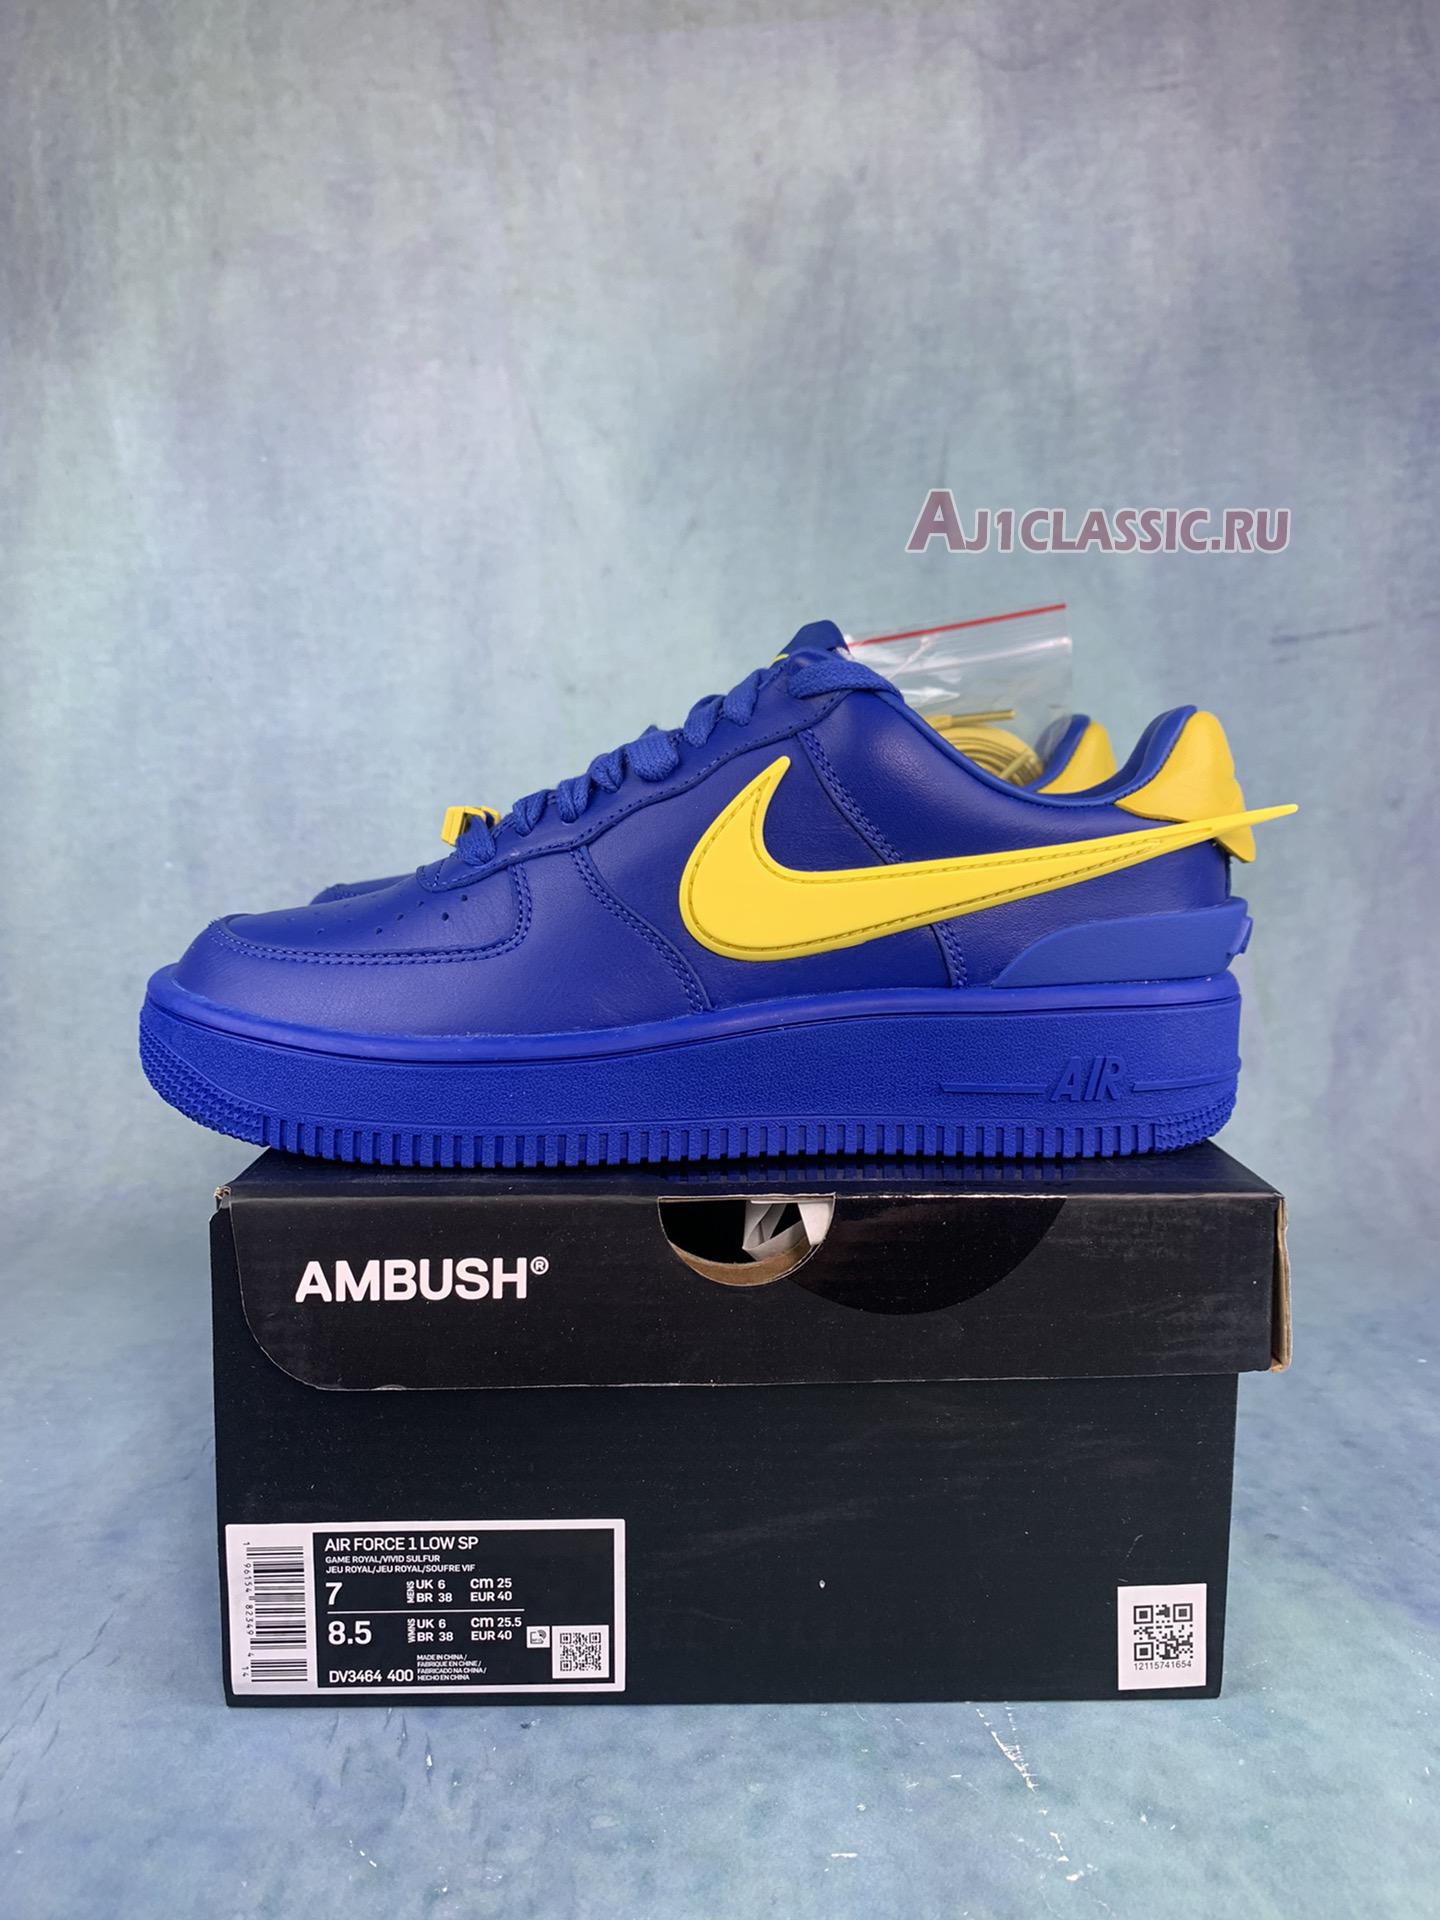 AMBUSH x Nike Air Force 1 Low Game Royal DV3464-400 Game Royal/Vivid Sulfur Sneakers